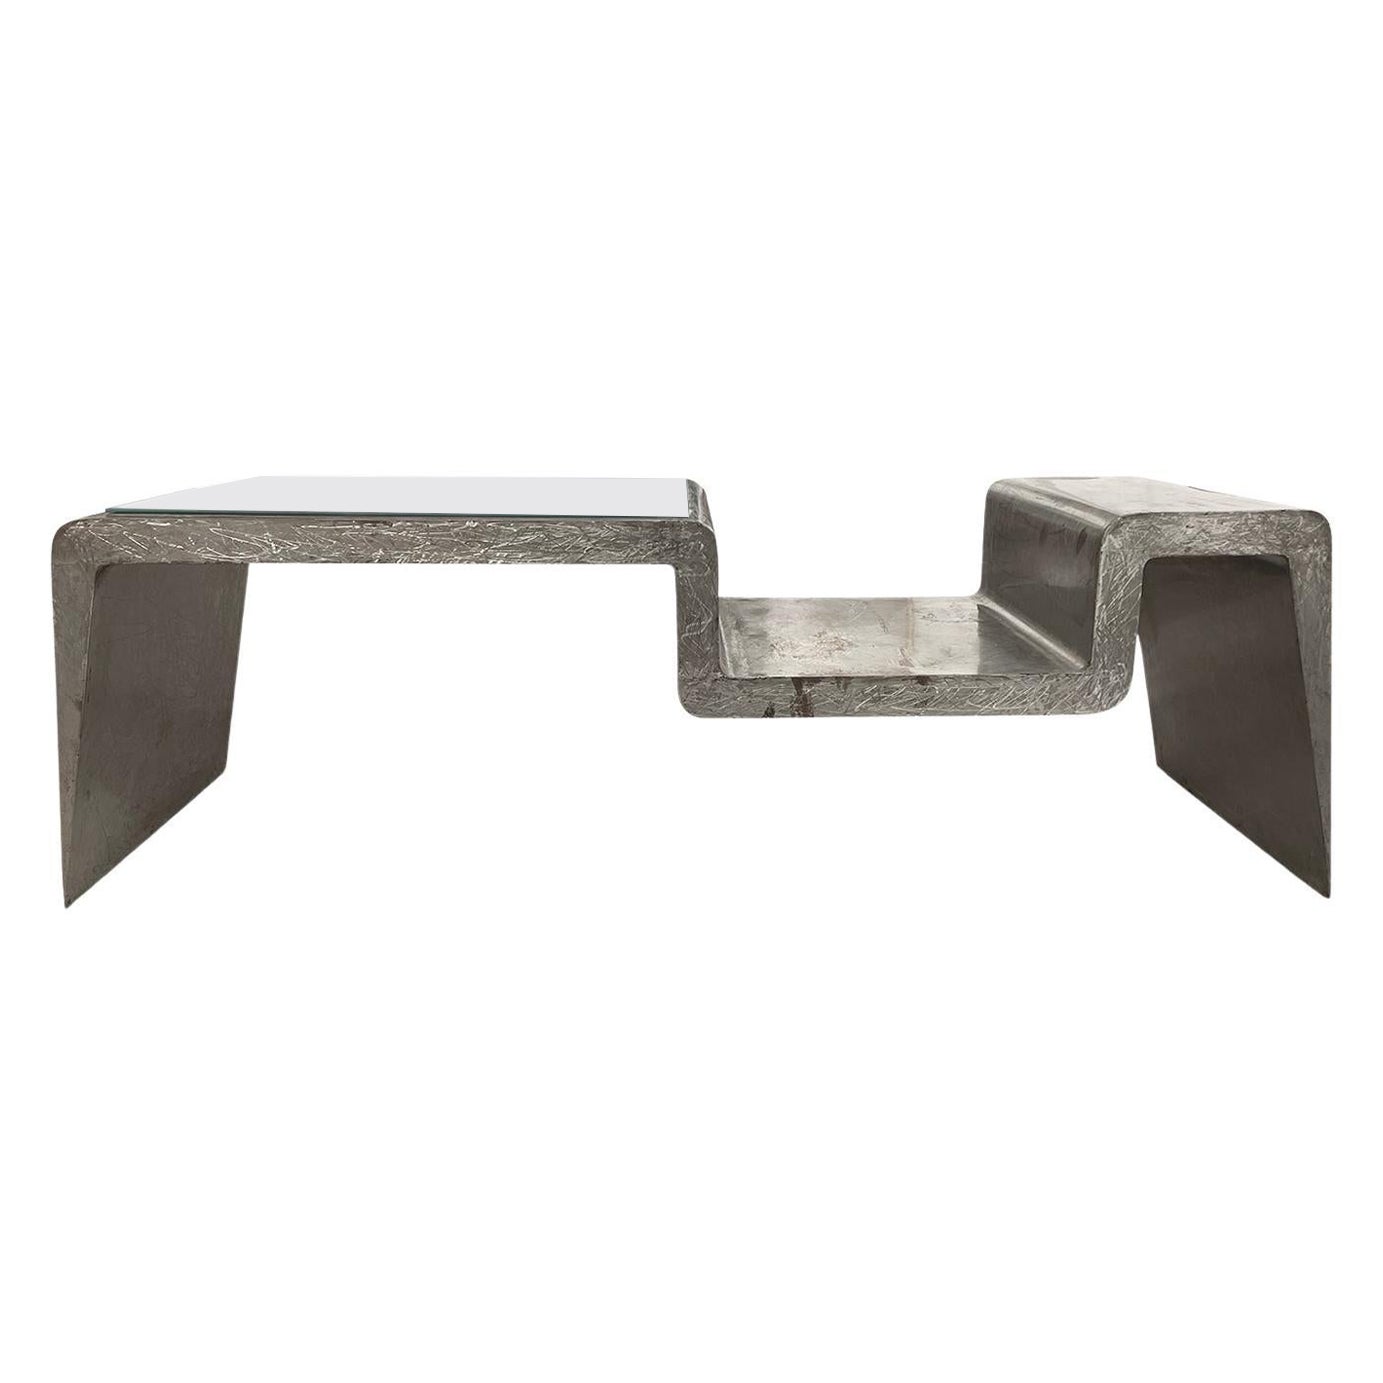 Bureau en métal galvanisé gris brutaliste italien du 20e siècle, table de bureau